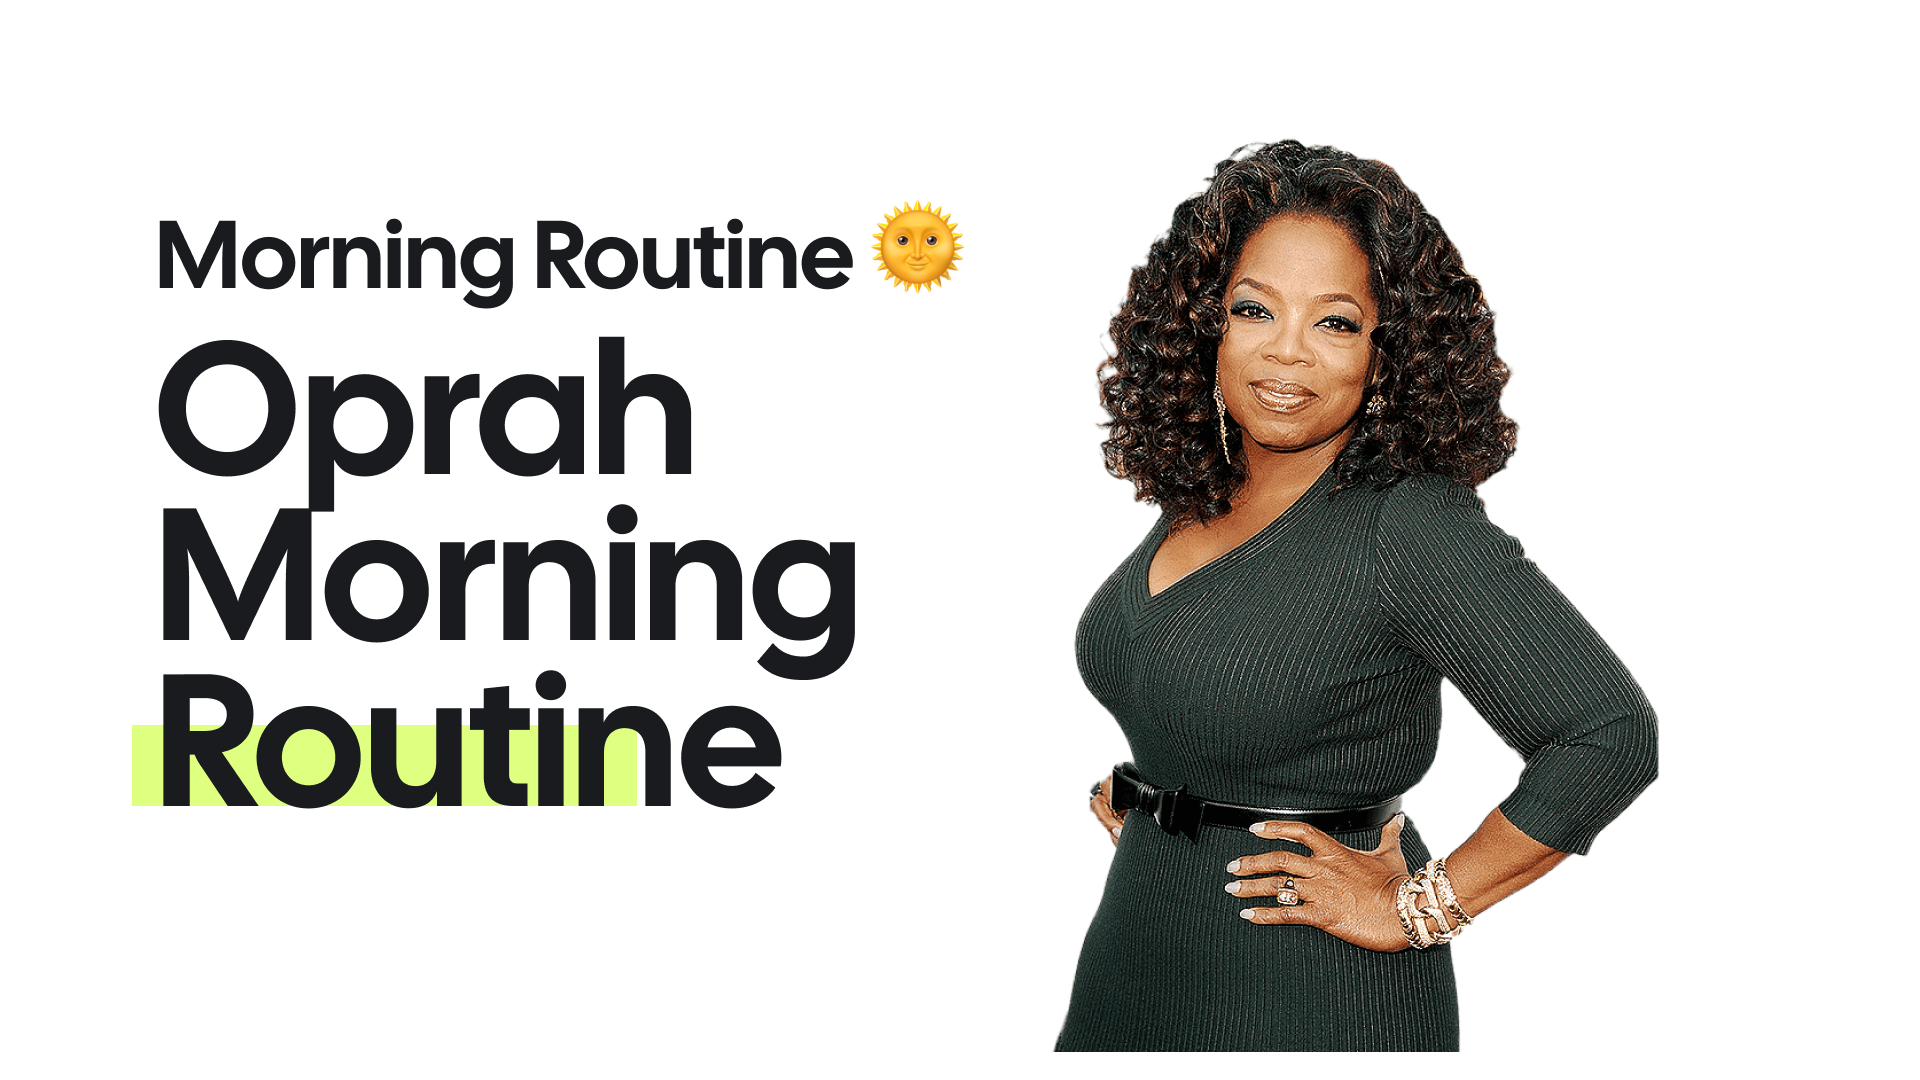 Oprah Winfrey's Morning Routine